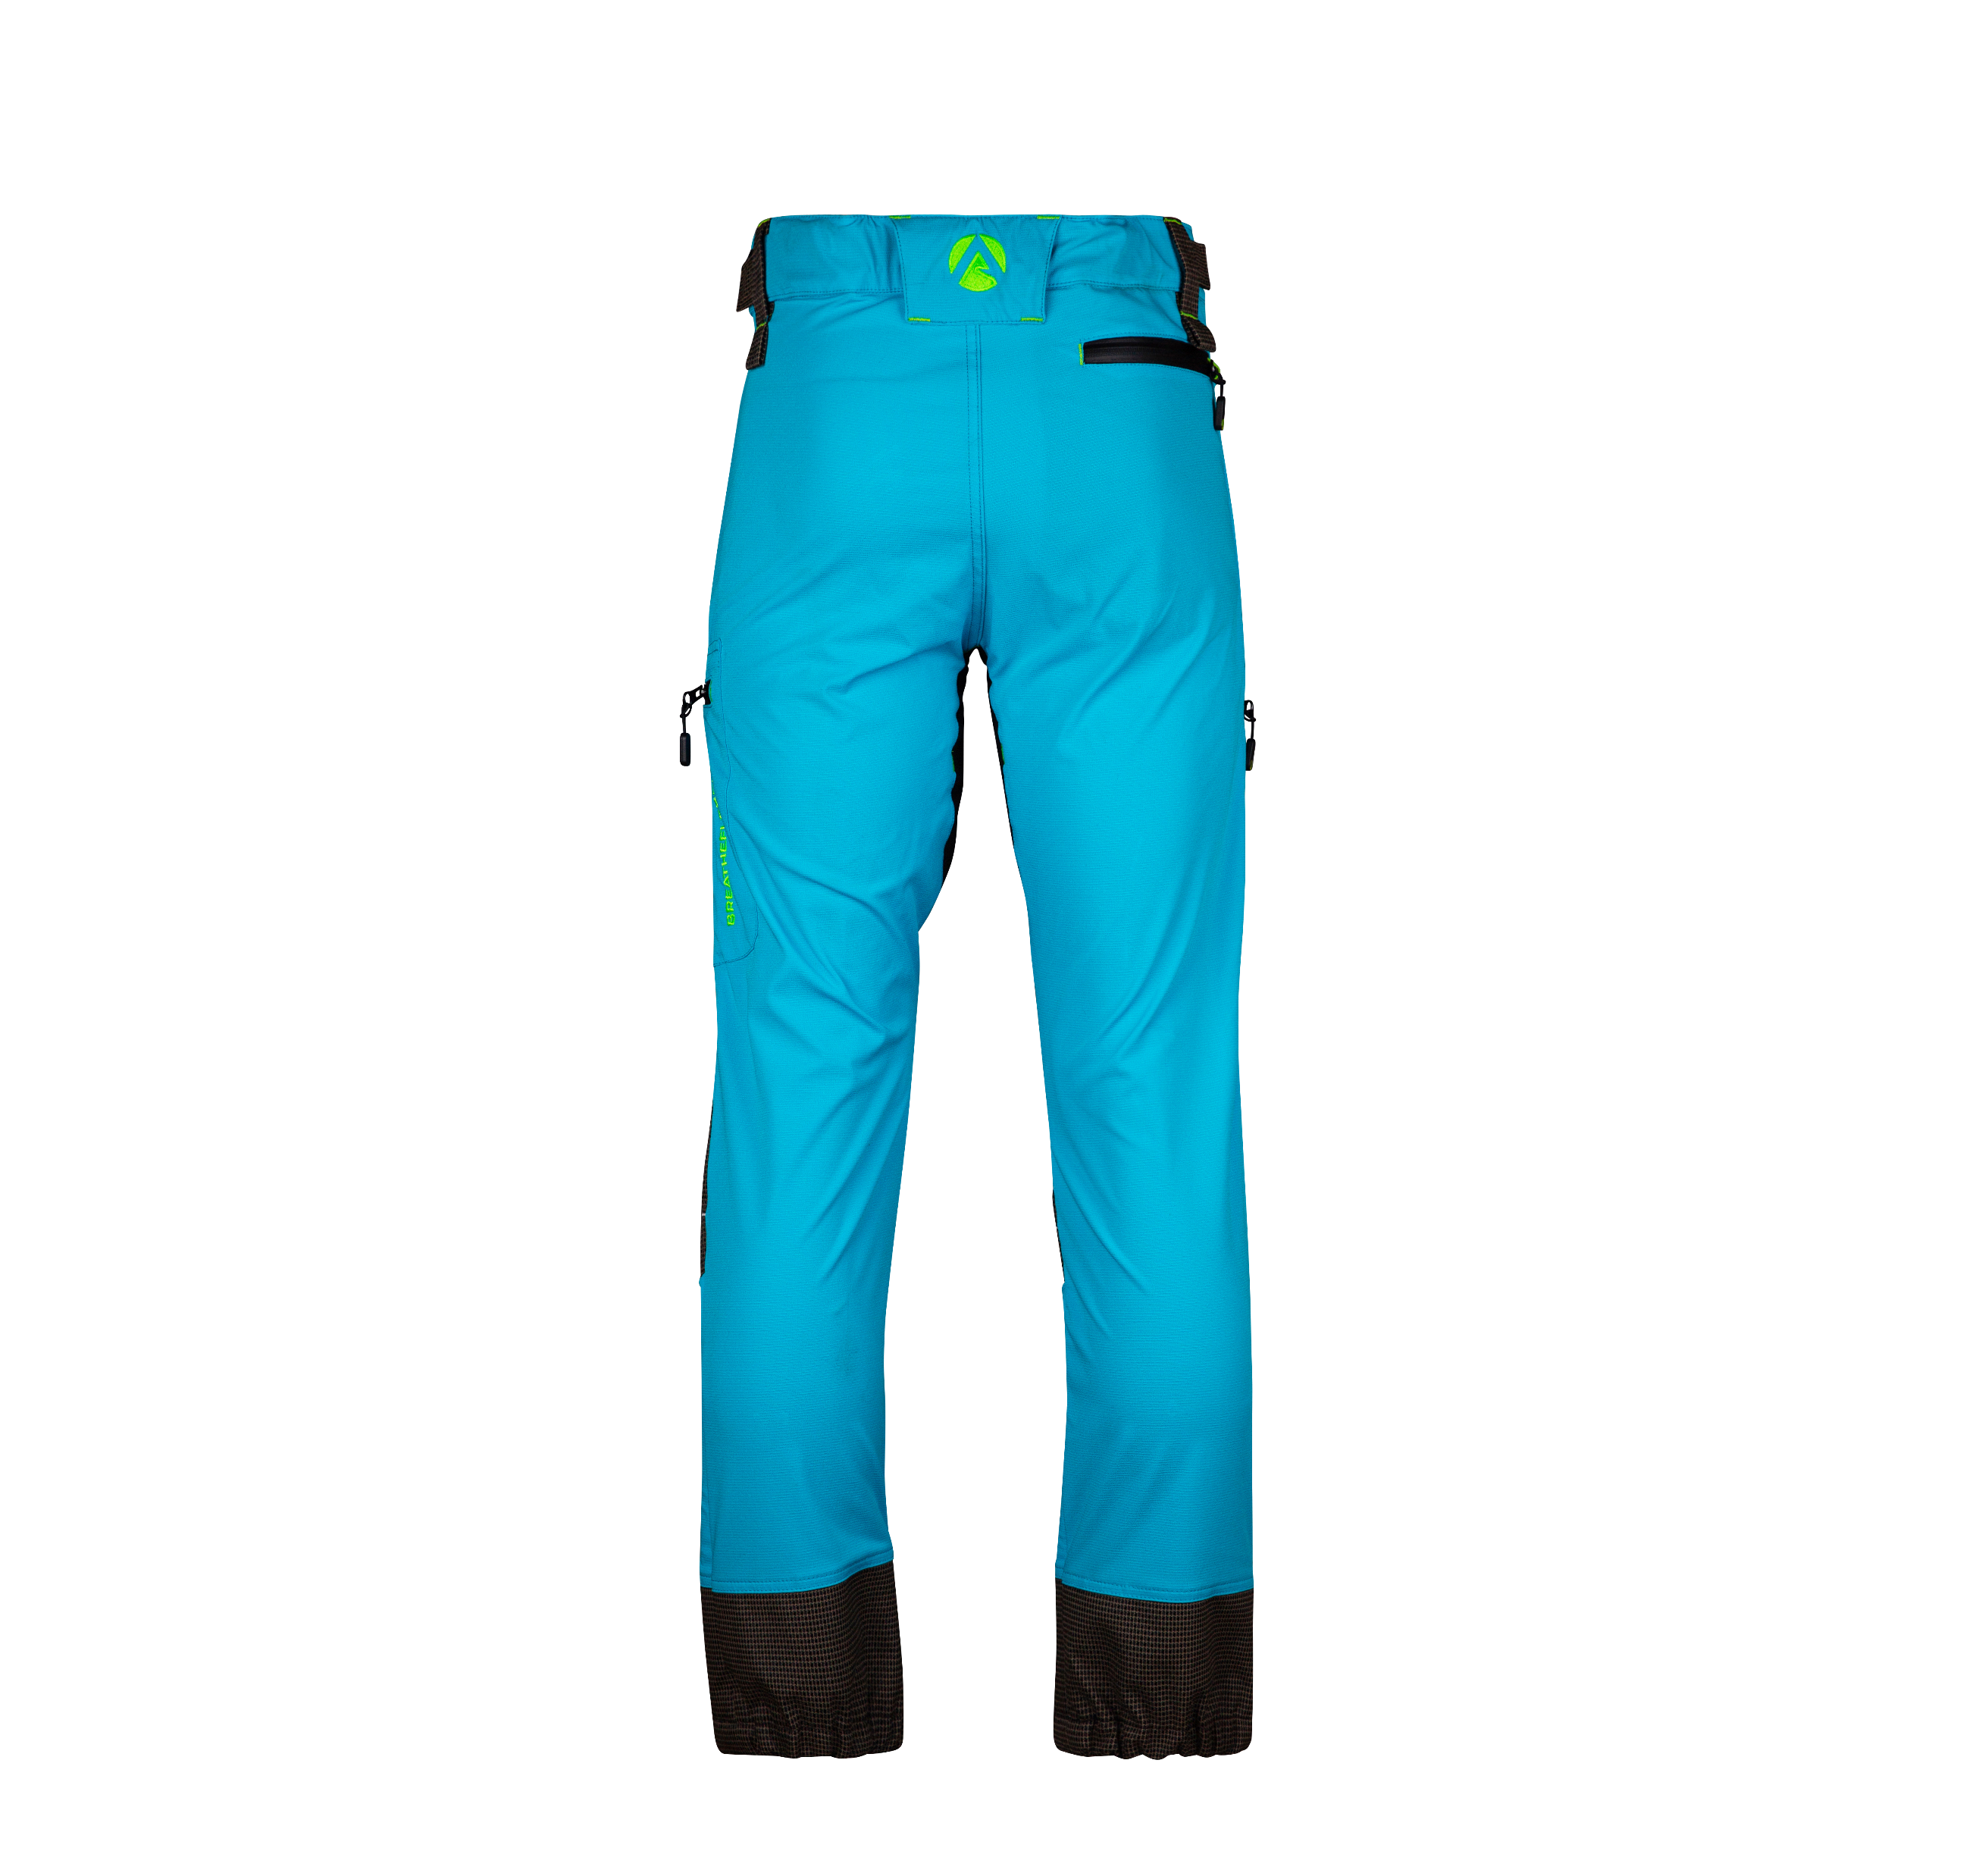 AT4160 Breatheflex Pro Trousers Non-Protective - Aqua